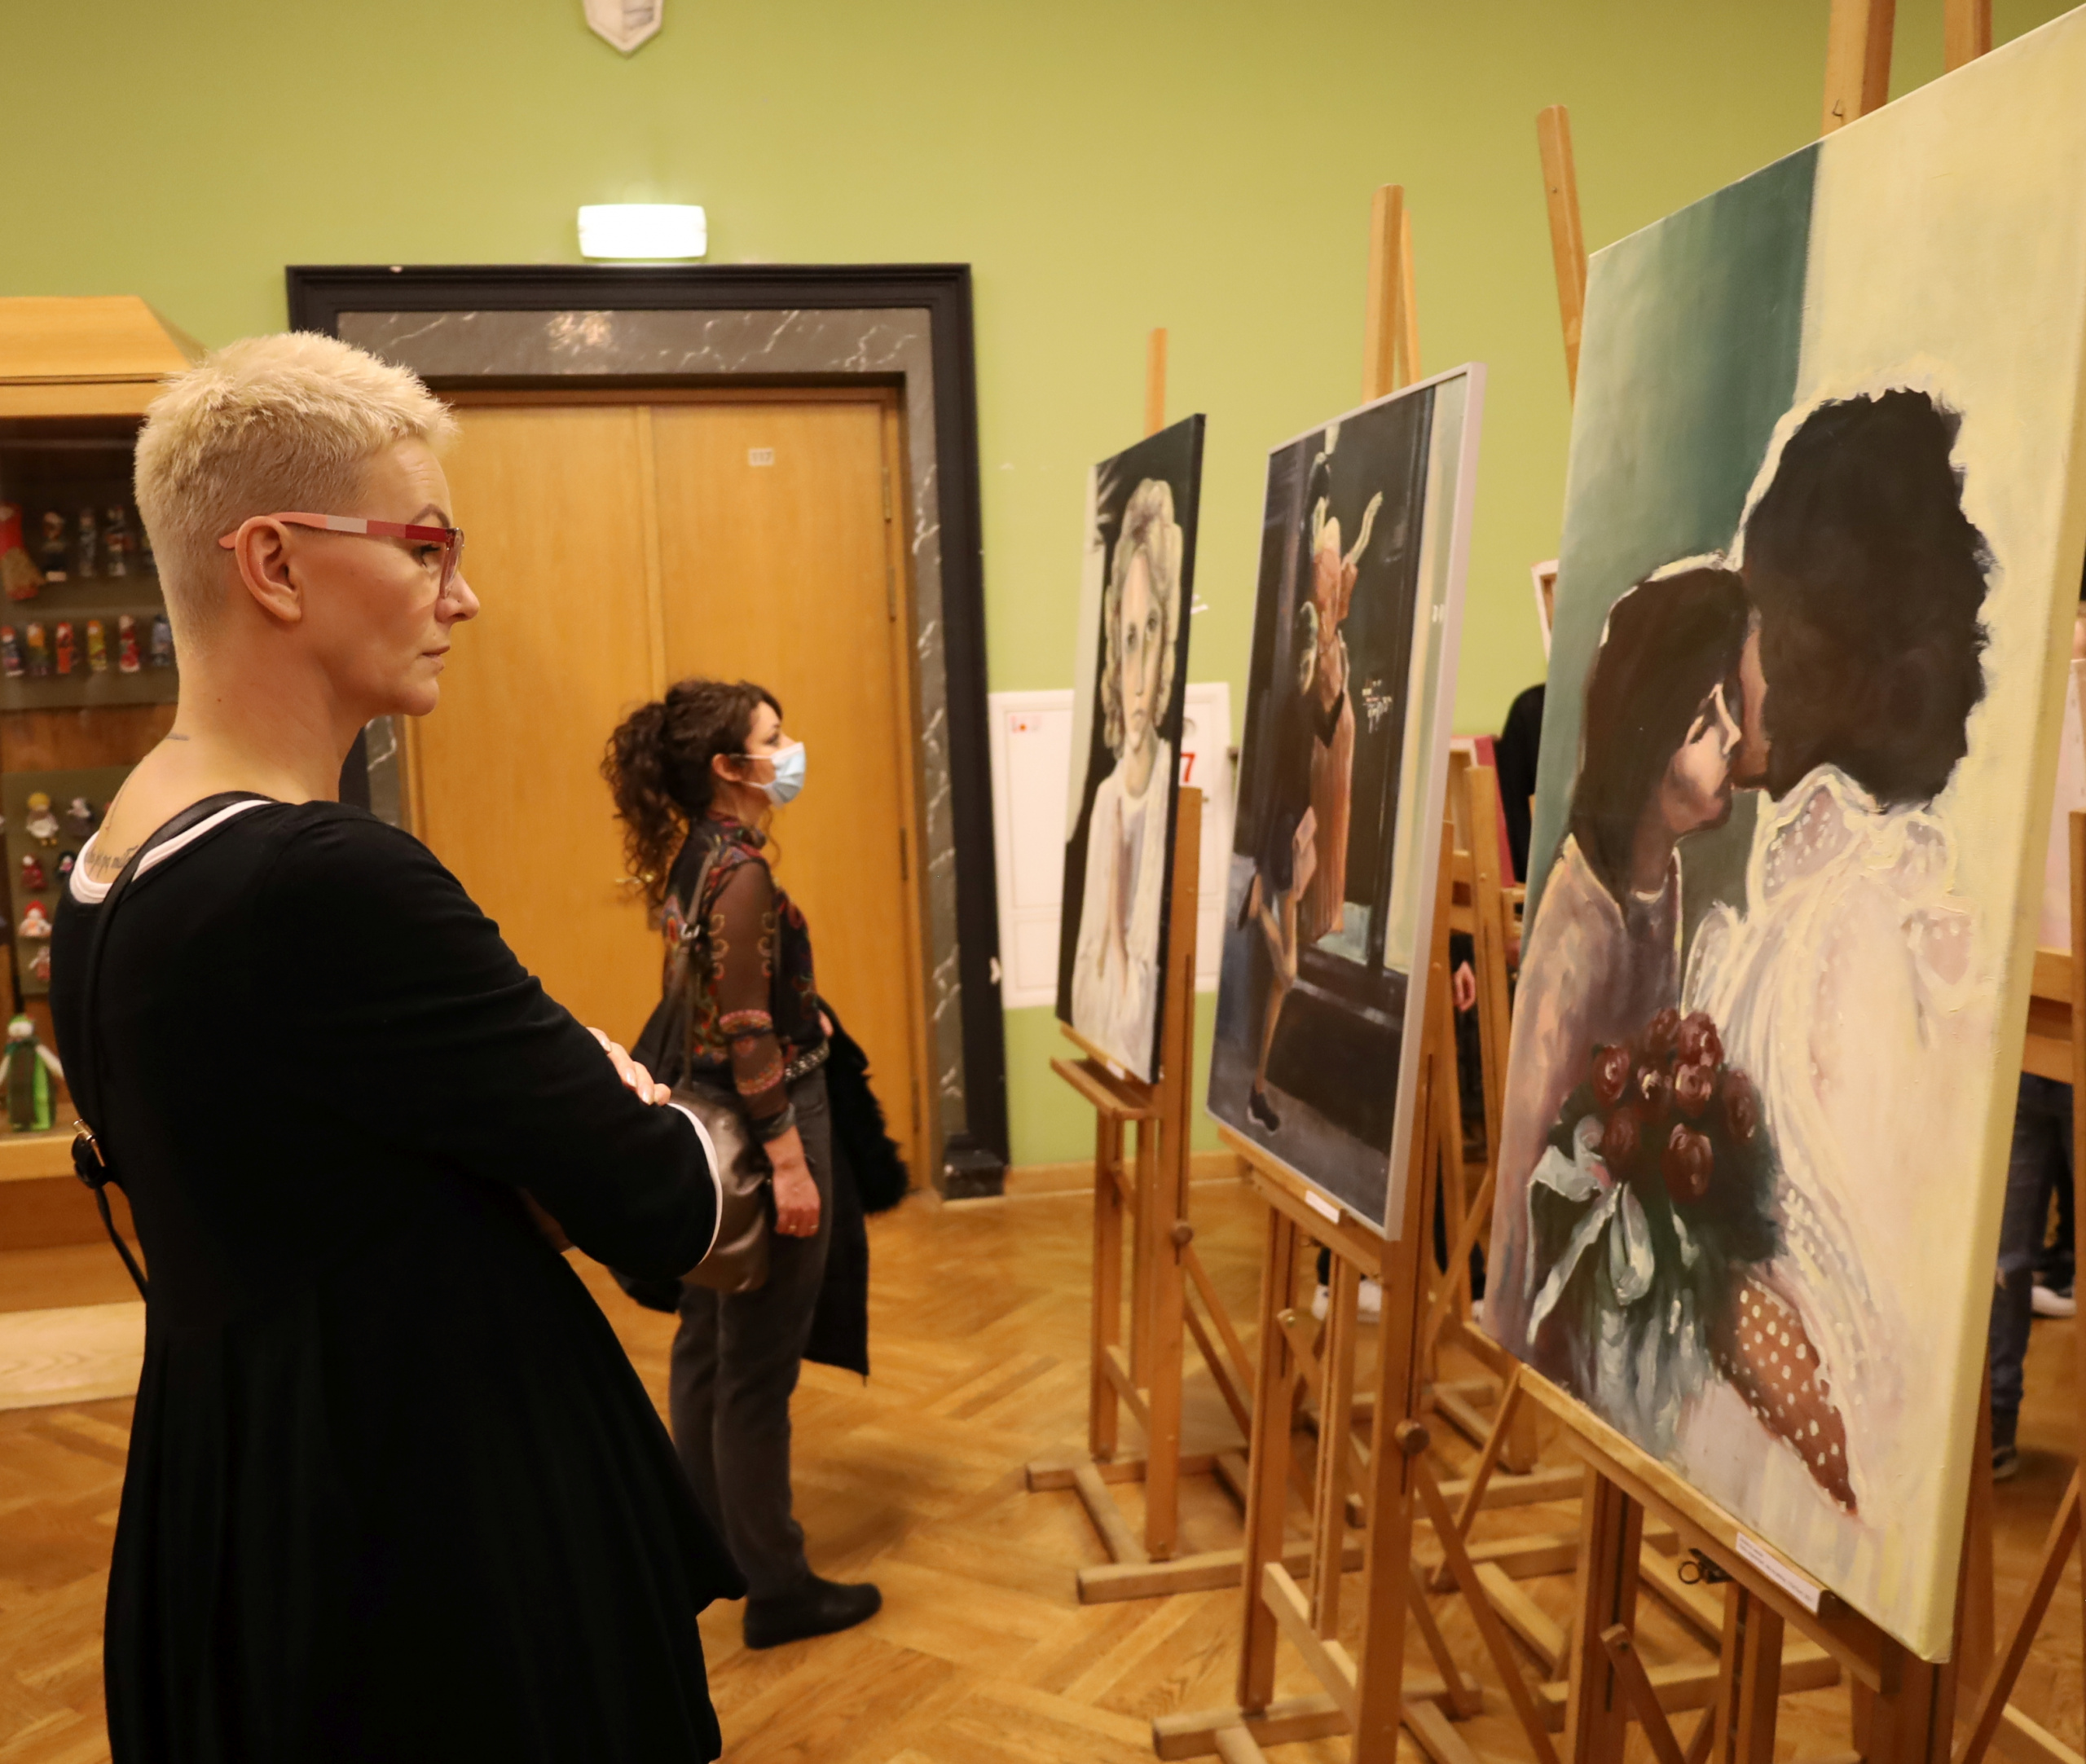 Zwiedzający wystawę oglądają prace studentów UJK.